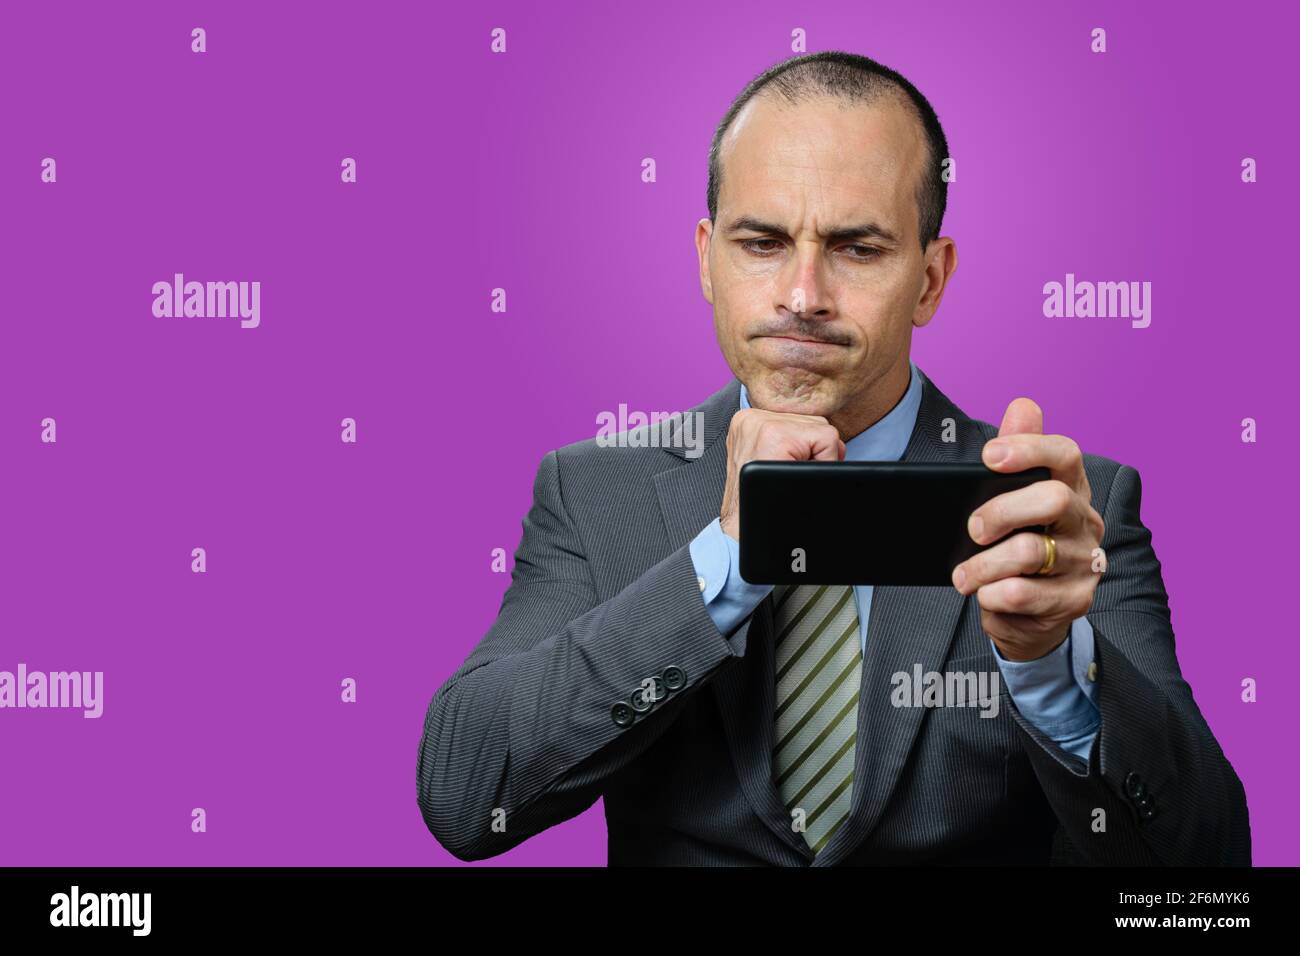 Reifer Mann mit Anzug und Krawatte, Blick auf sein Smartphone, enttäuscht und mit der Faust unter dem Kinn. Violetter Hintergrund. Stockfoto